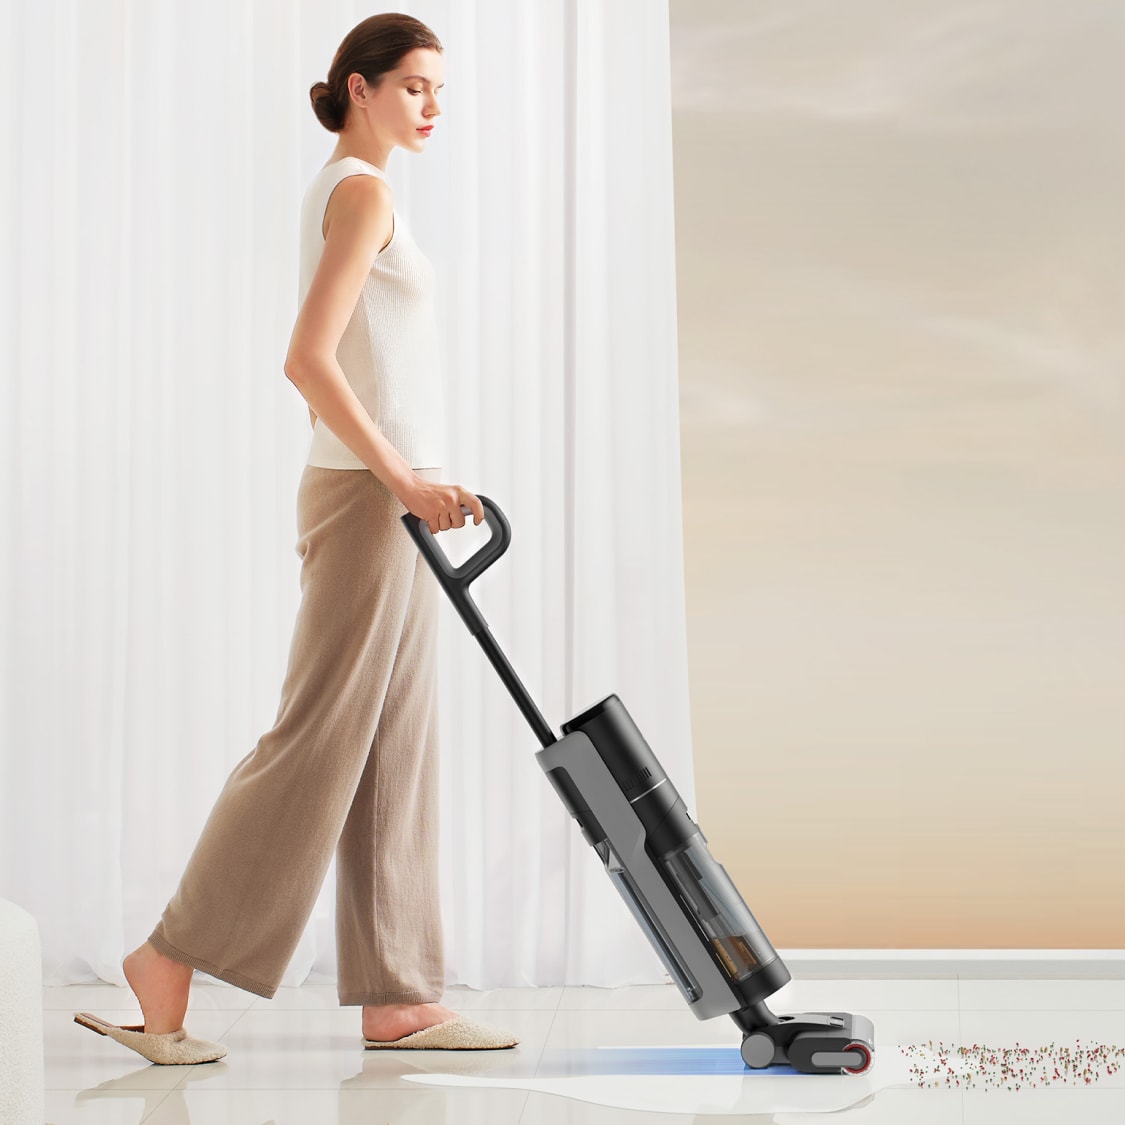  Dreametech H12 Dual Smart Wet Dry Vacuum, Floor